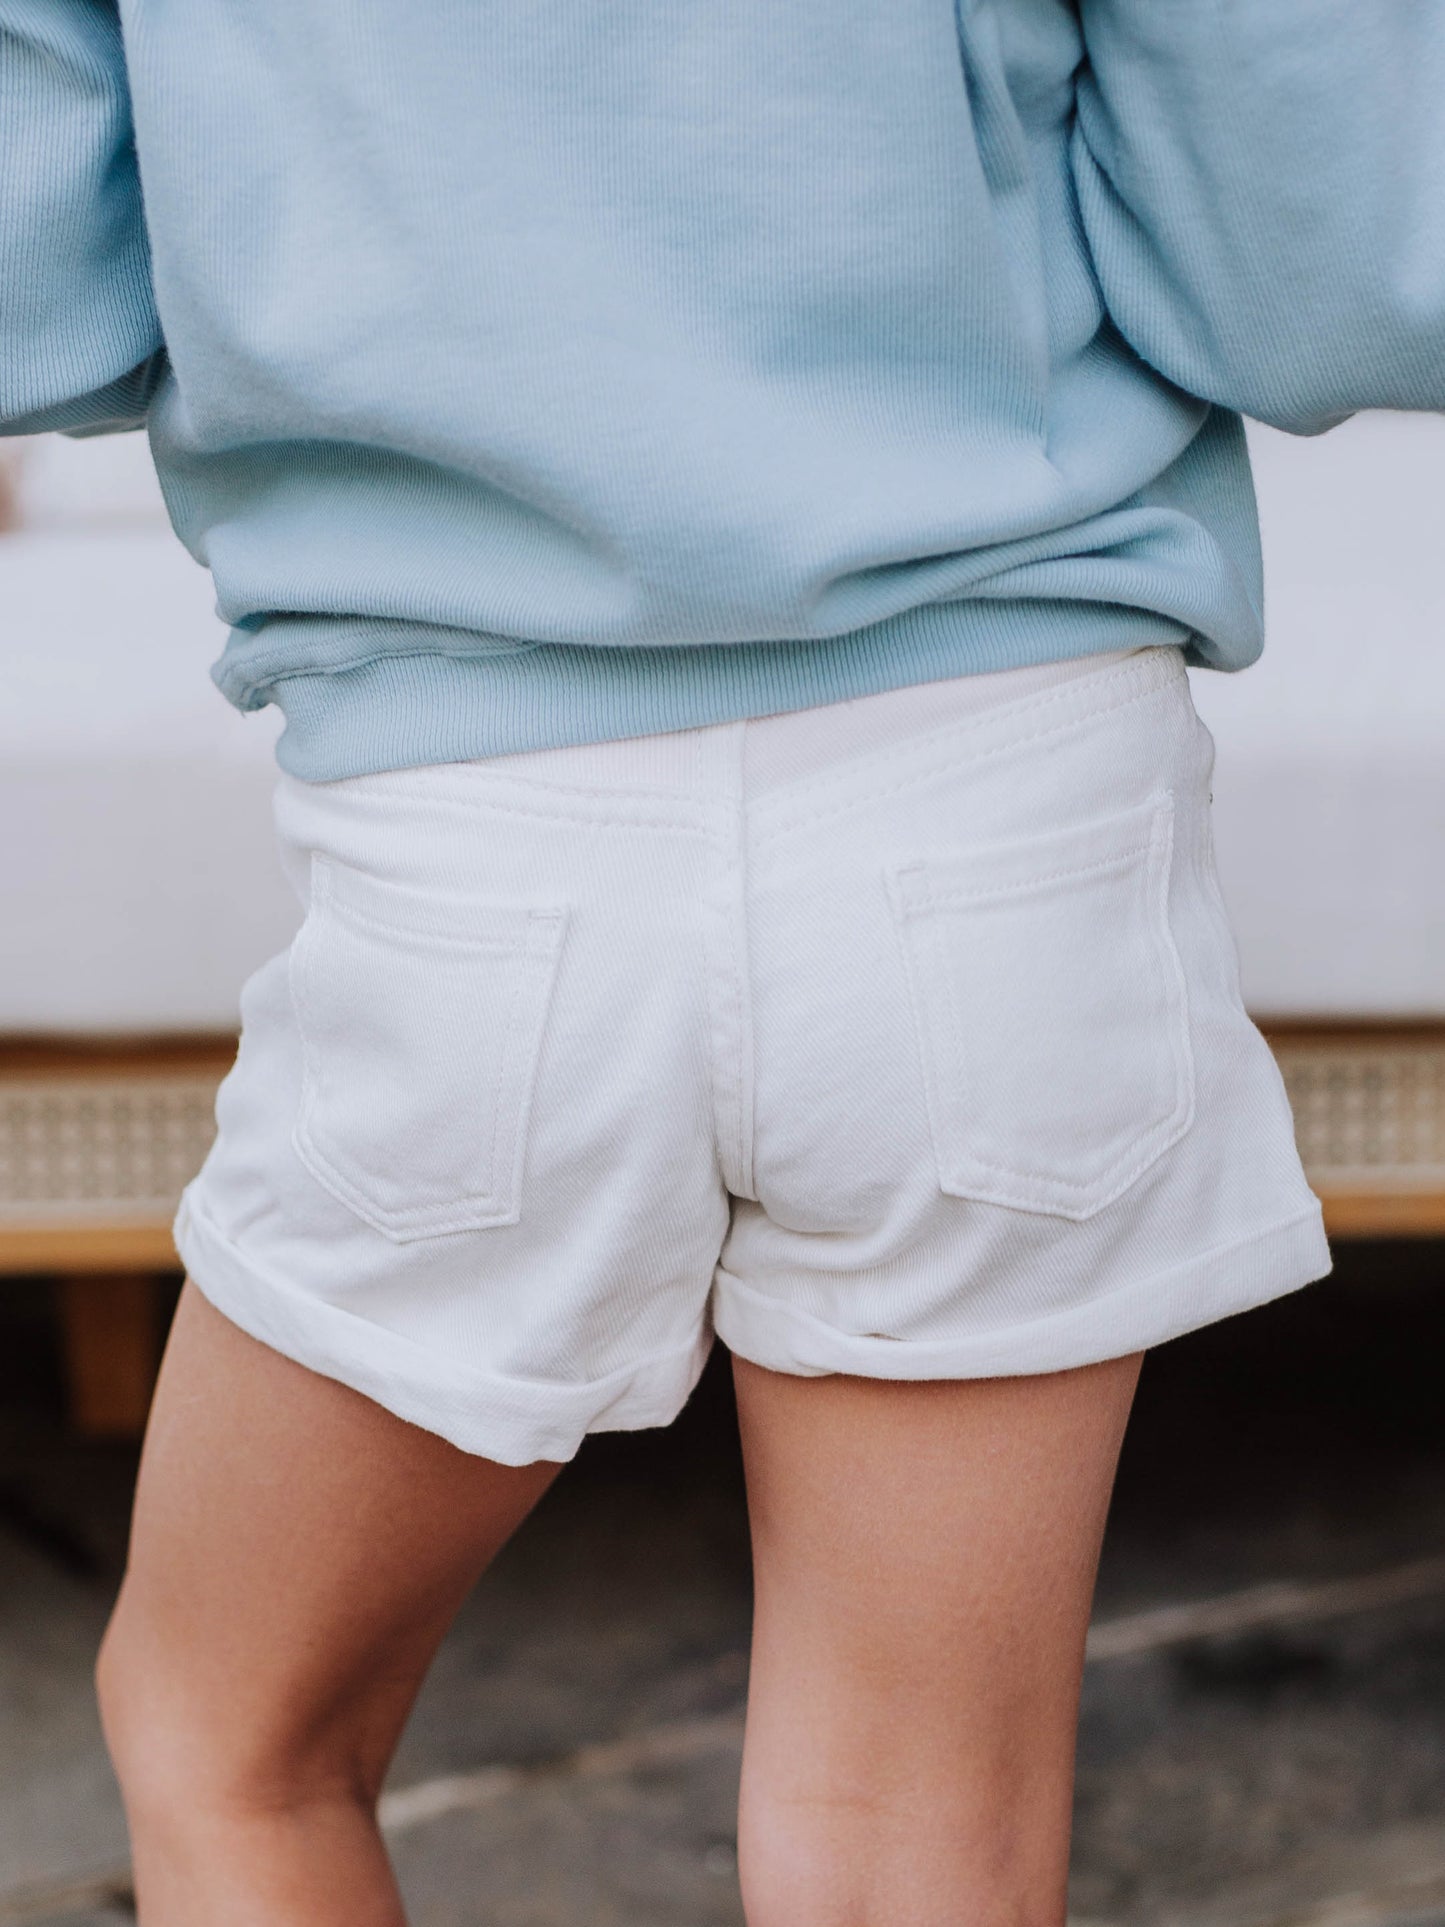 Denim Shorts - White